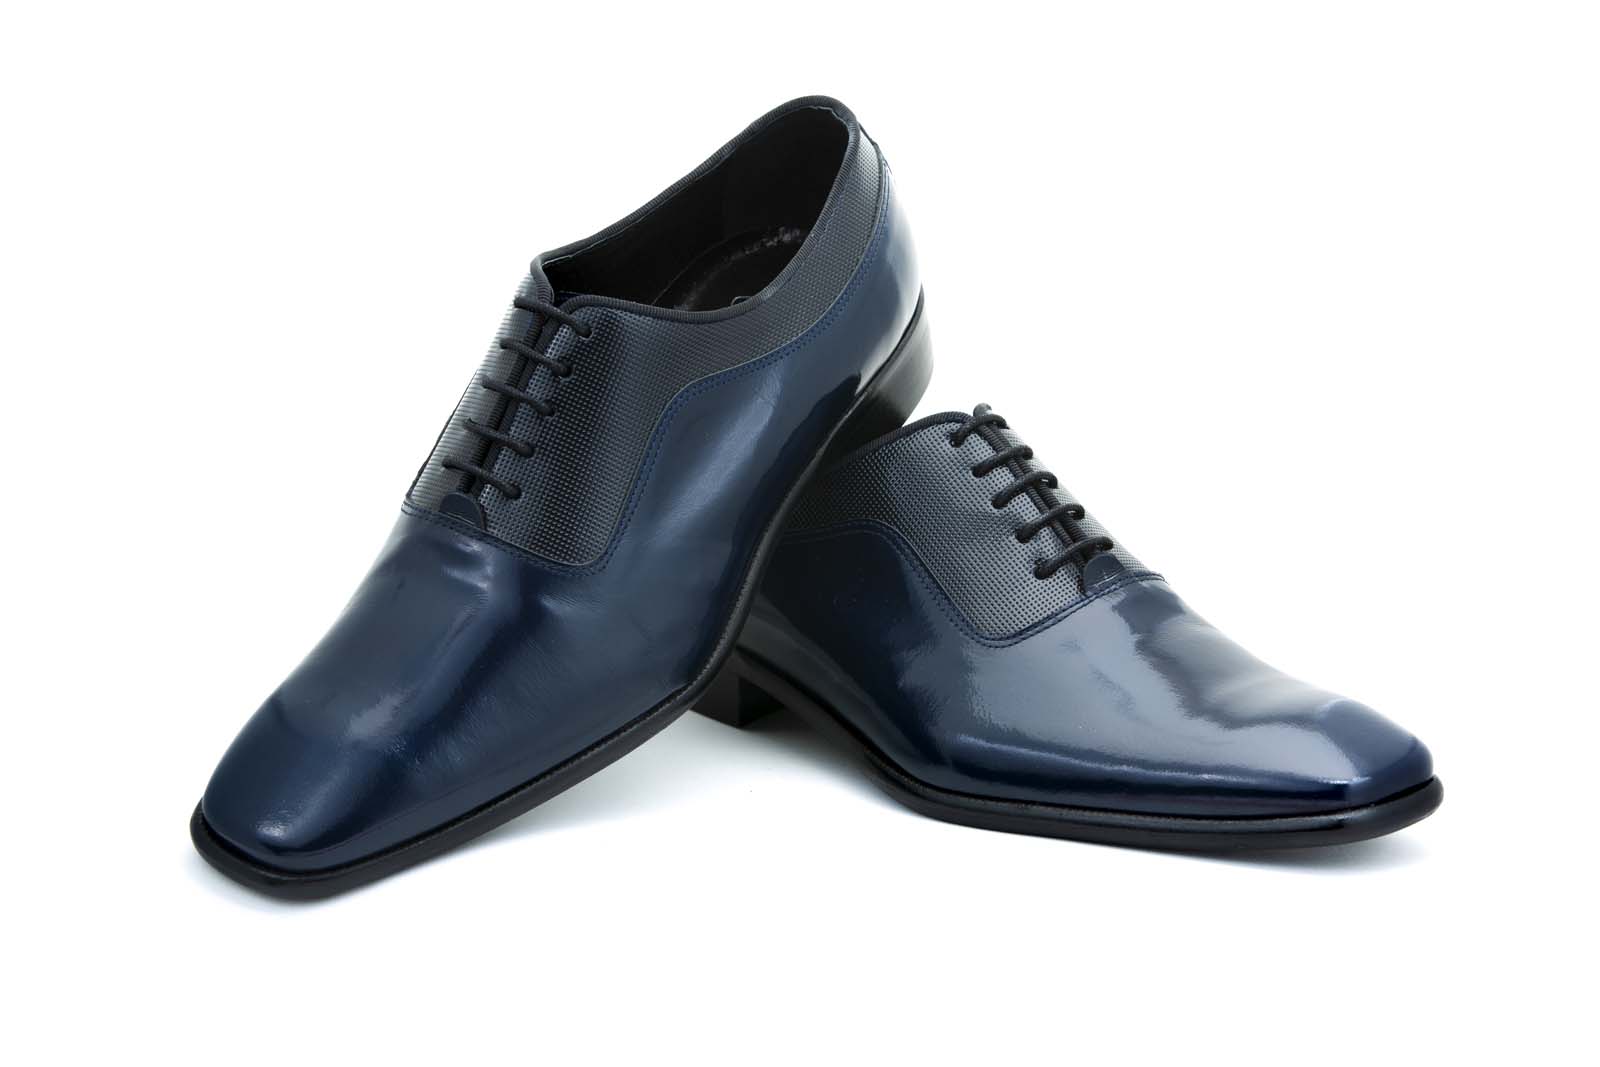 Zapatos de novio modelo Oxford en piel de color azul